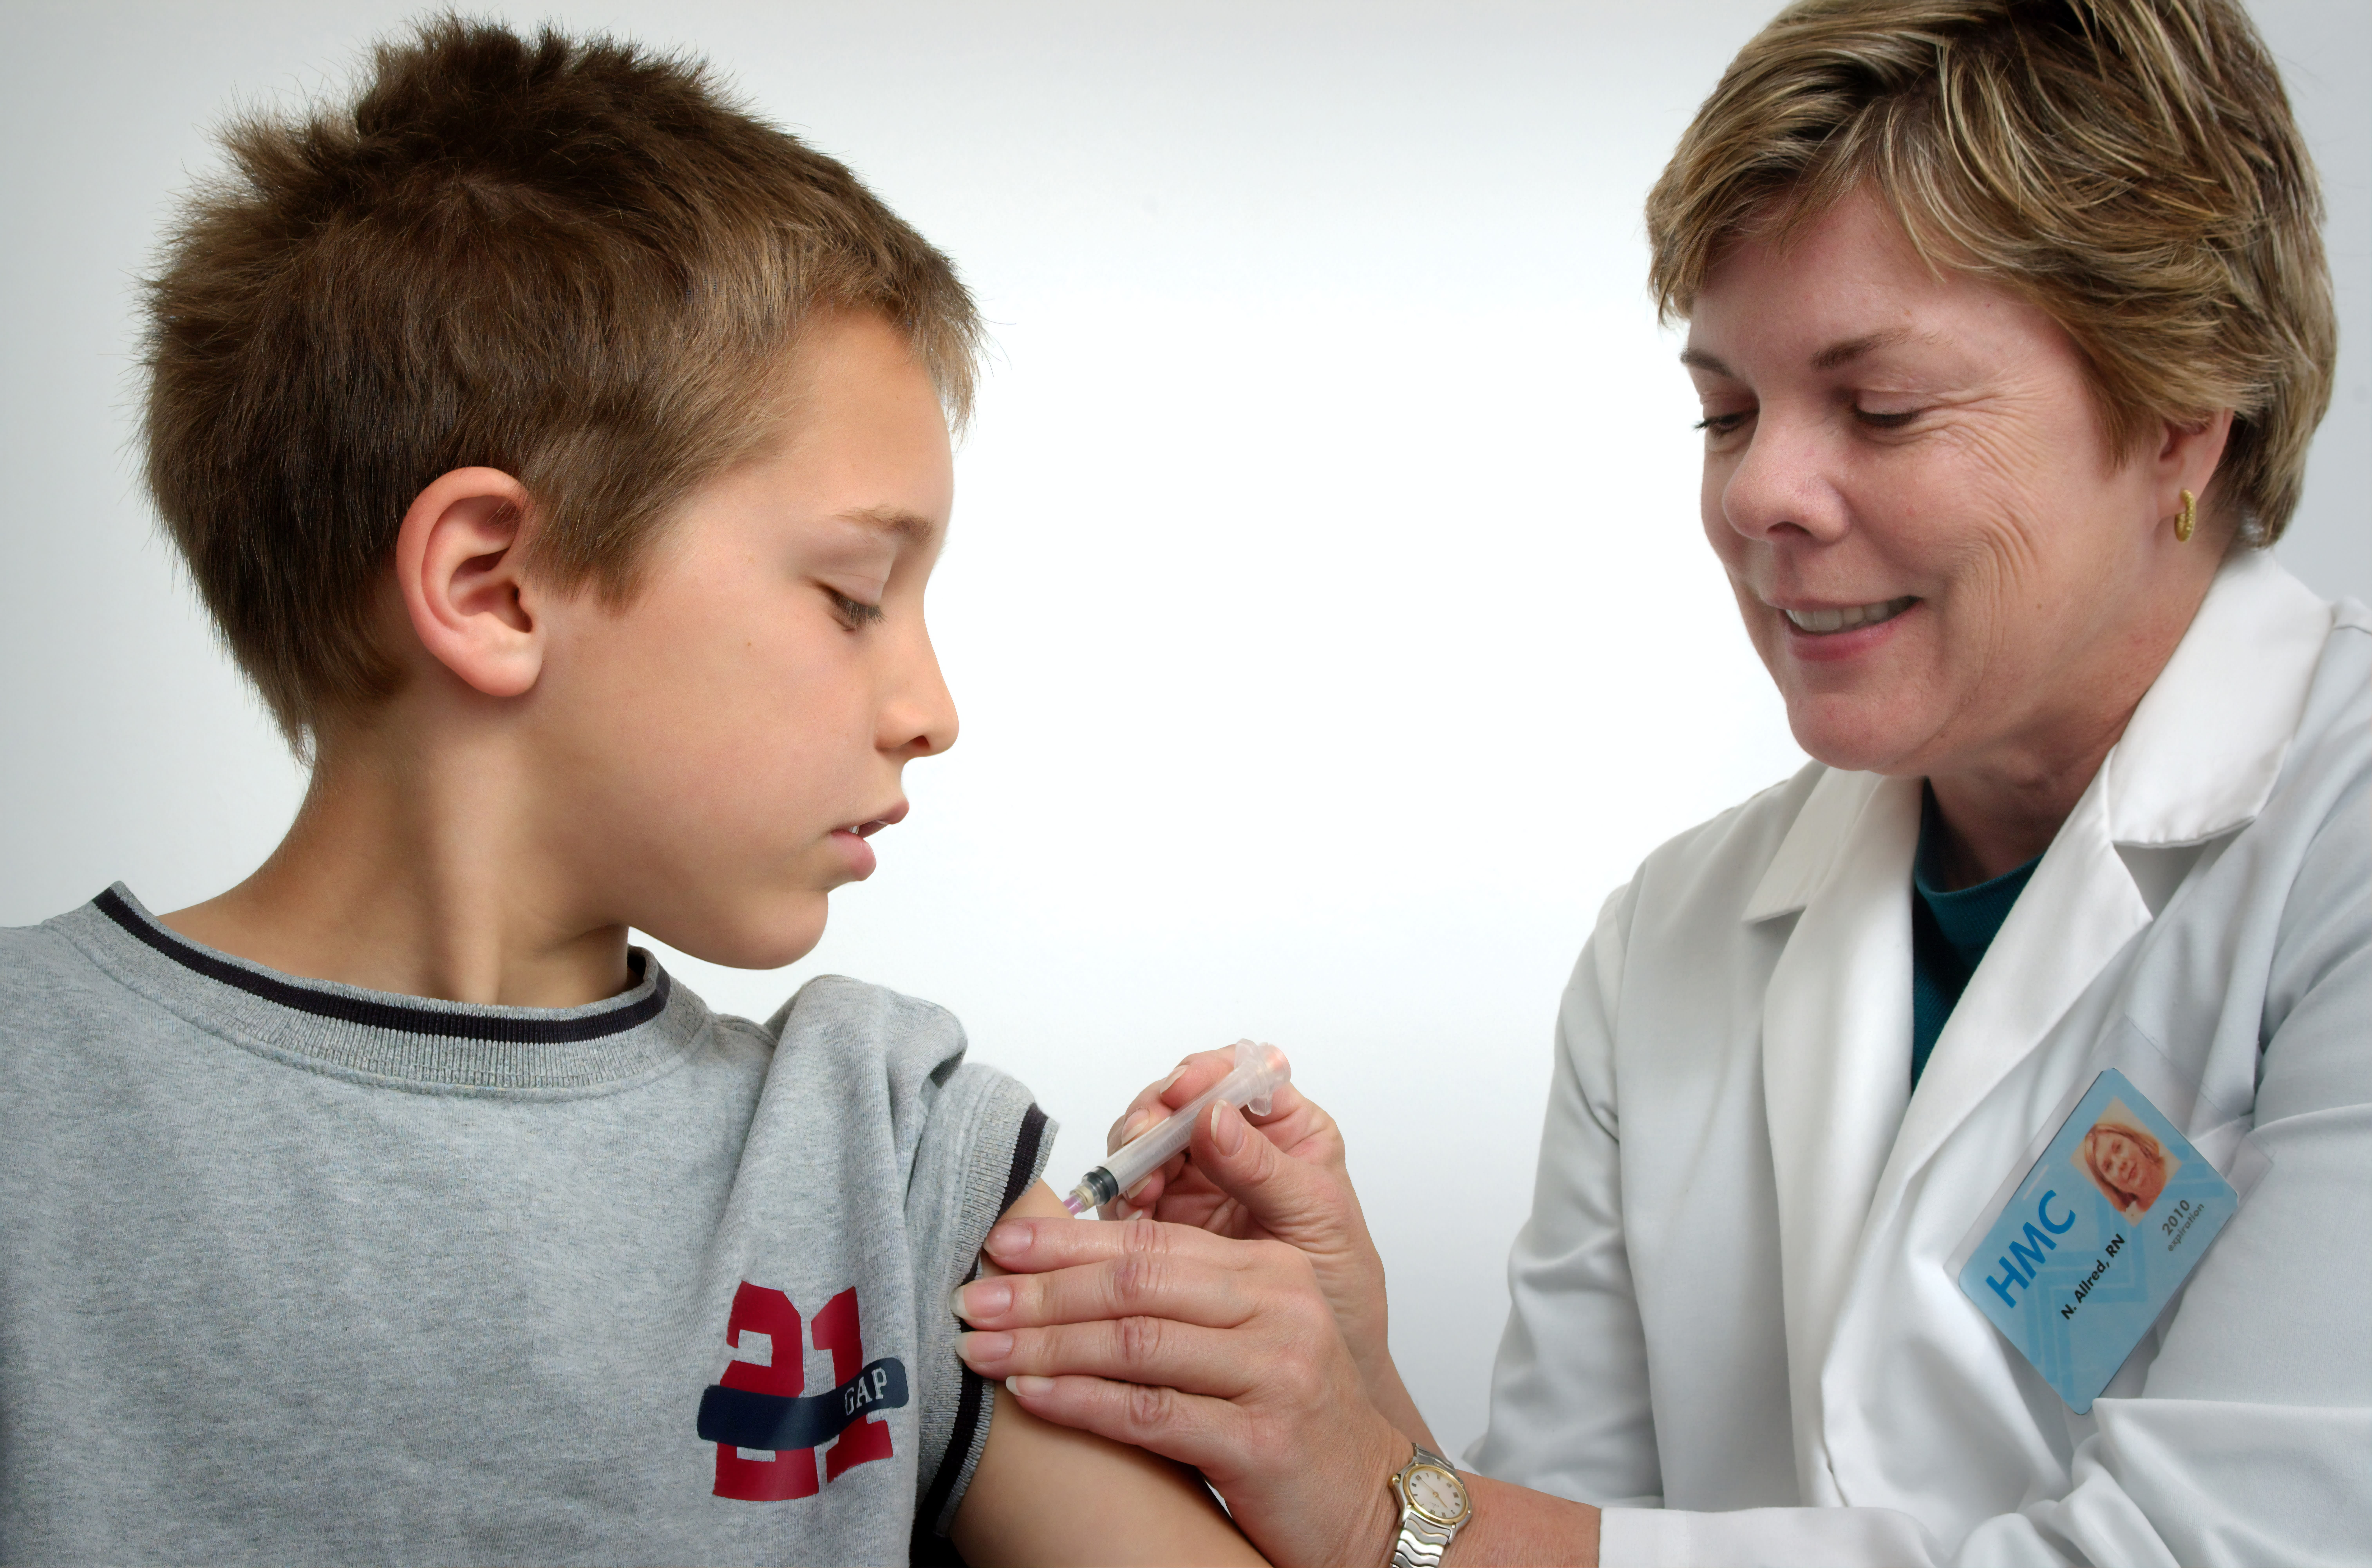 Sykepleieren som er avbildet på dette fotografiet fra 2006, var i ferd med å gi en intramuskulær vaksinasjon i venstre skulder til en ung gutt.Sykepleieren klype den overliggende skulderhuden for å immobilisere injeksjonsstedet.